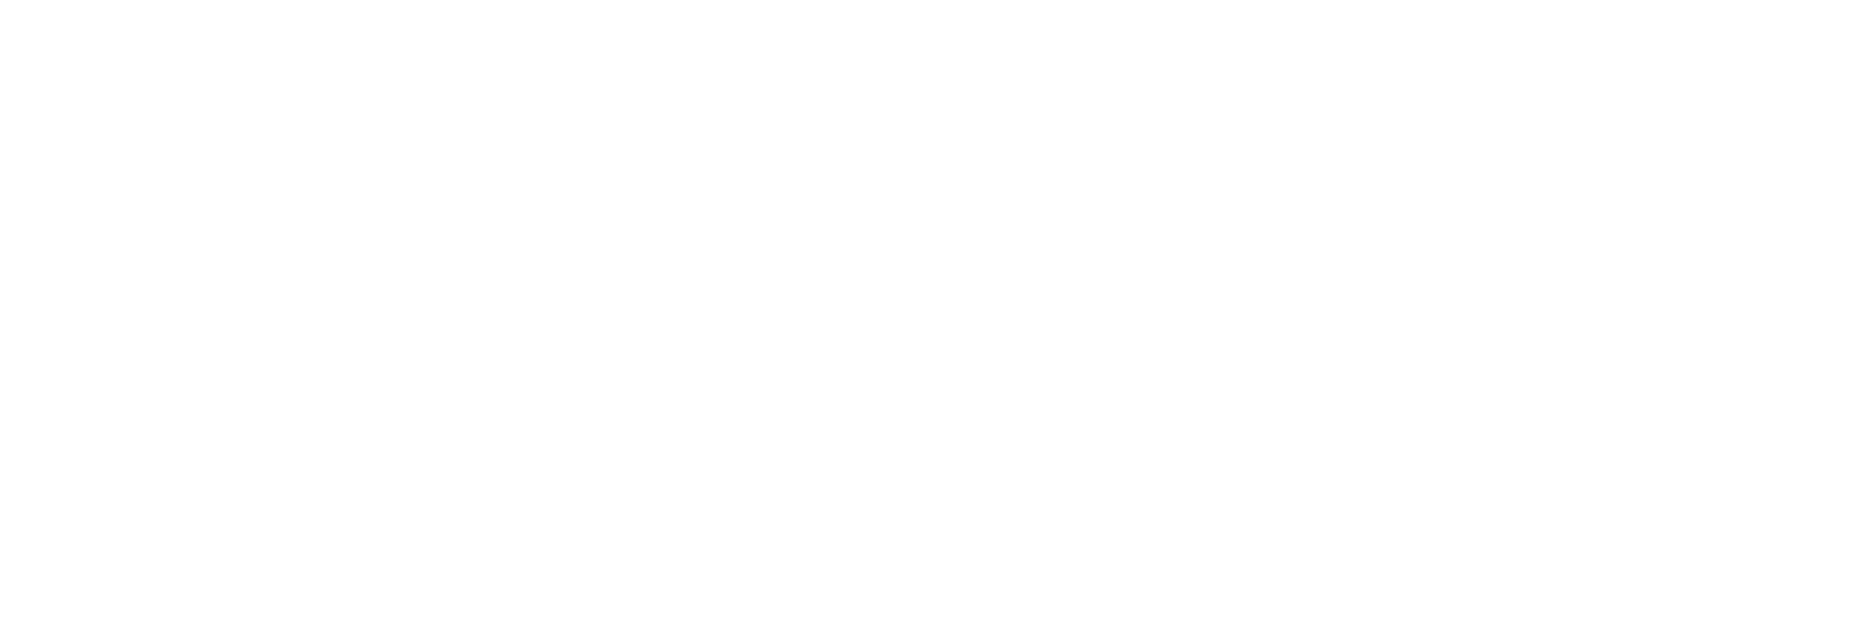 512-693-4021